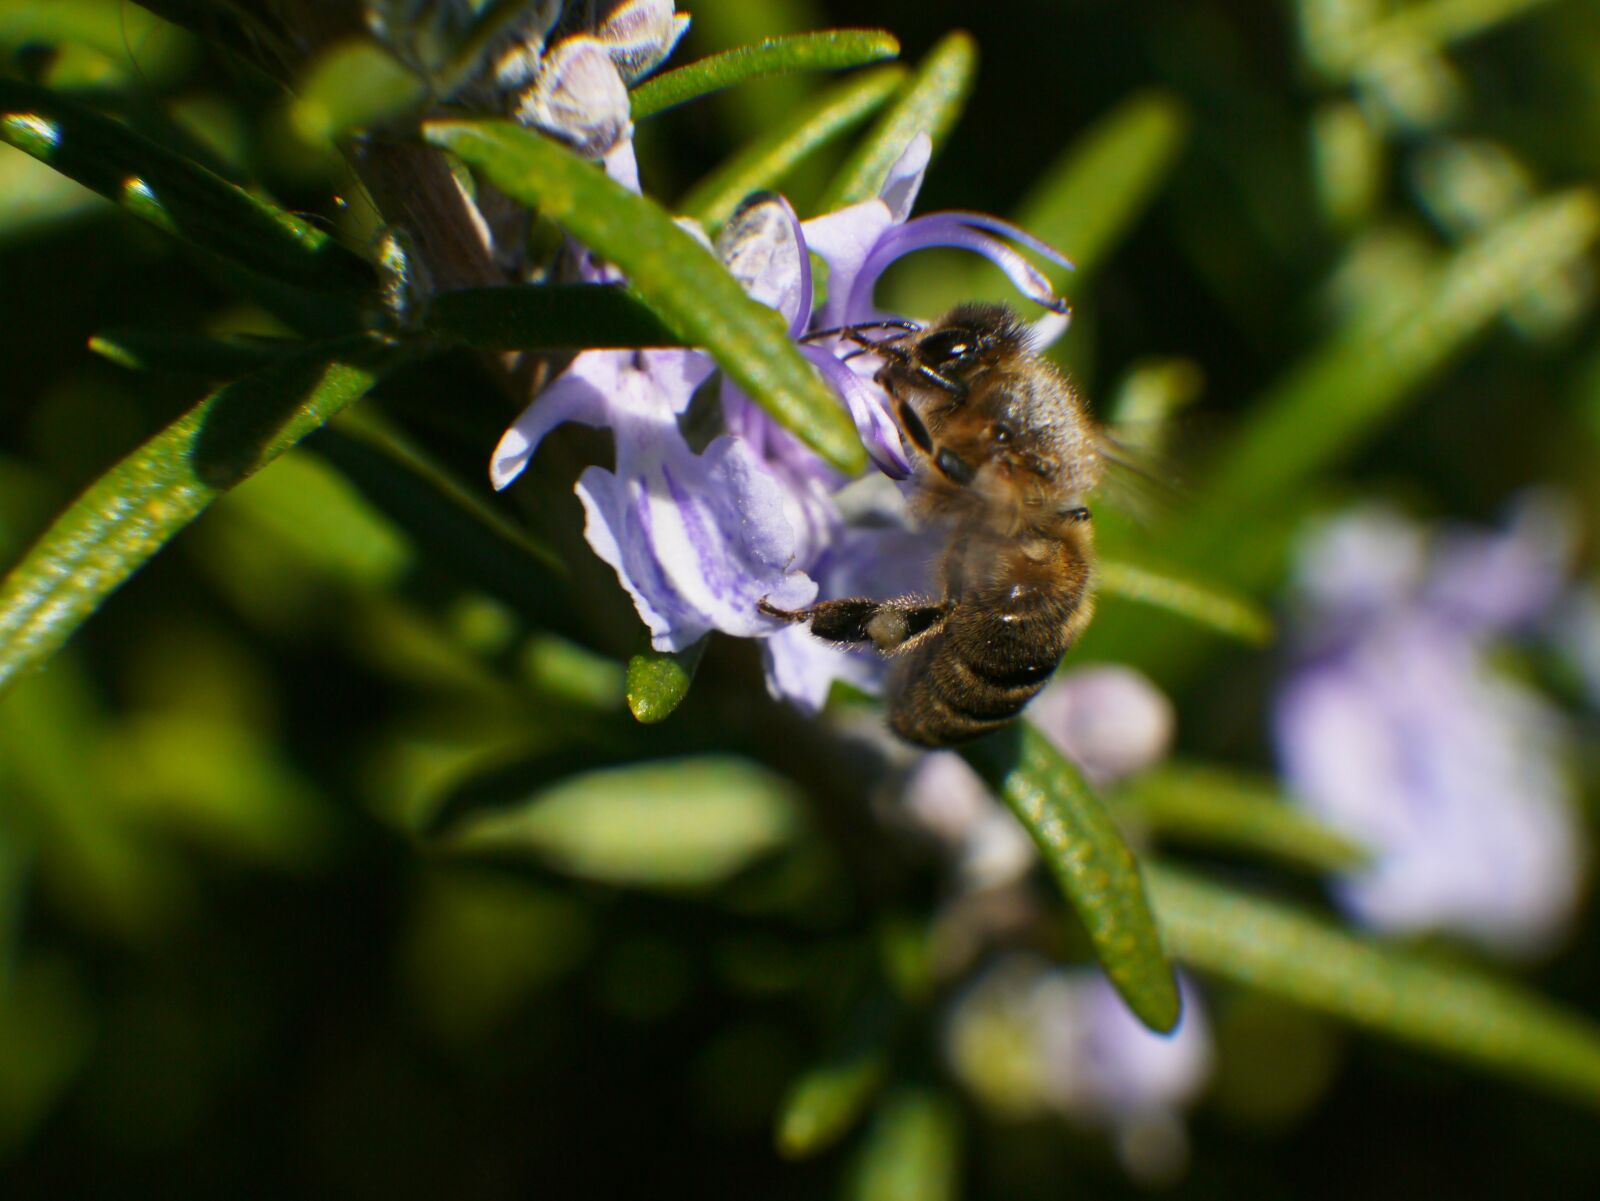 Panasonic Lumix DMC-G3 sample photo. Bee, nature, close up photography